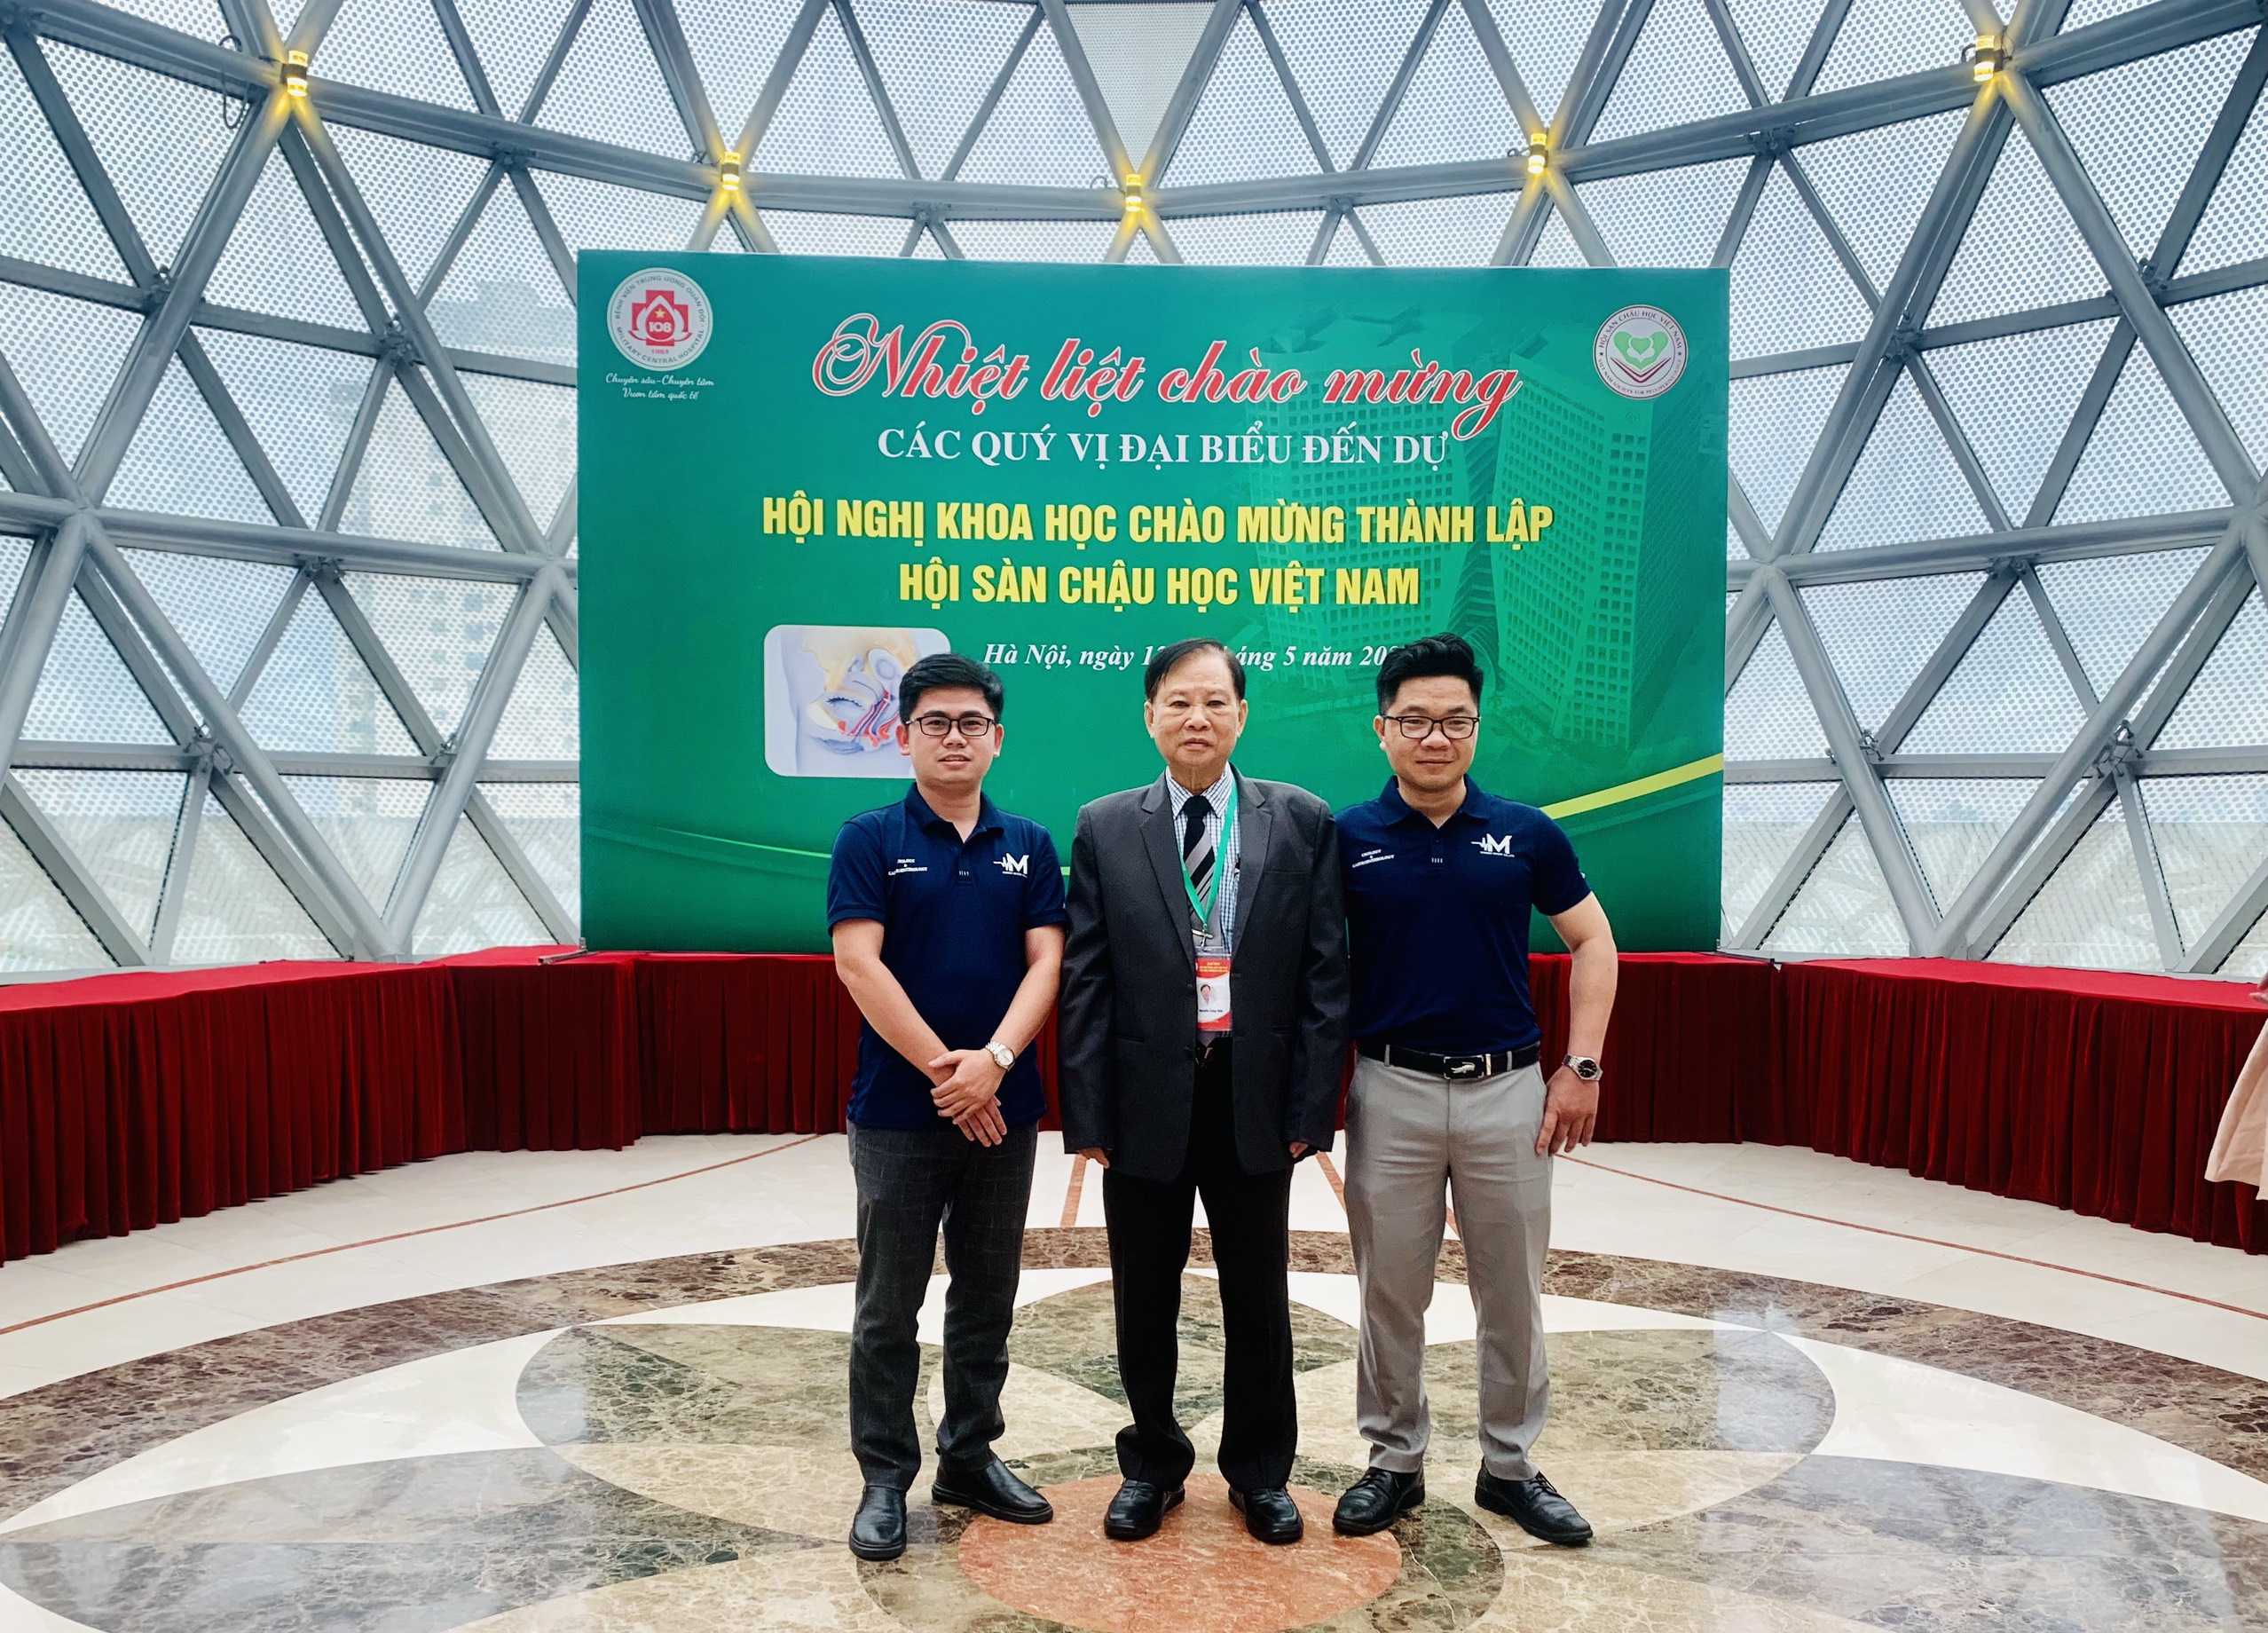 Vinmed tham dự hội nghị khoa học Chào mừng thành lập Hội sàn chậu học Việt Nam